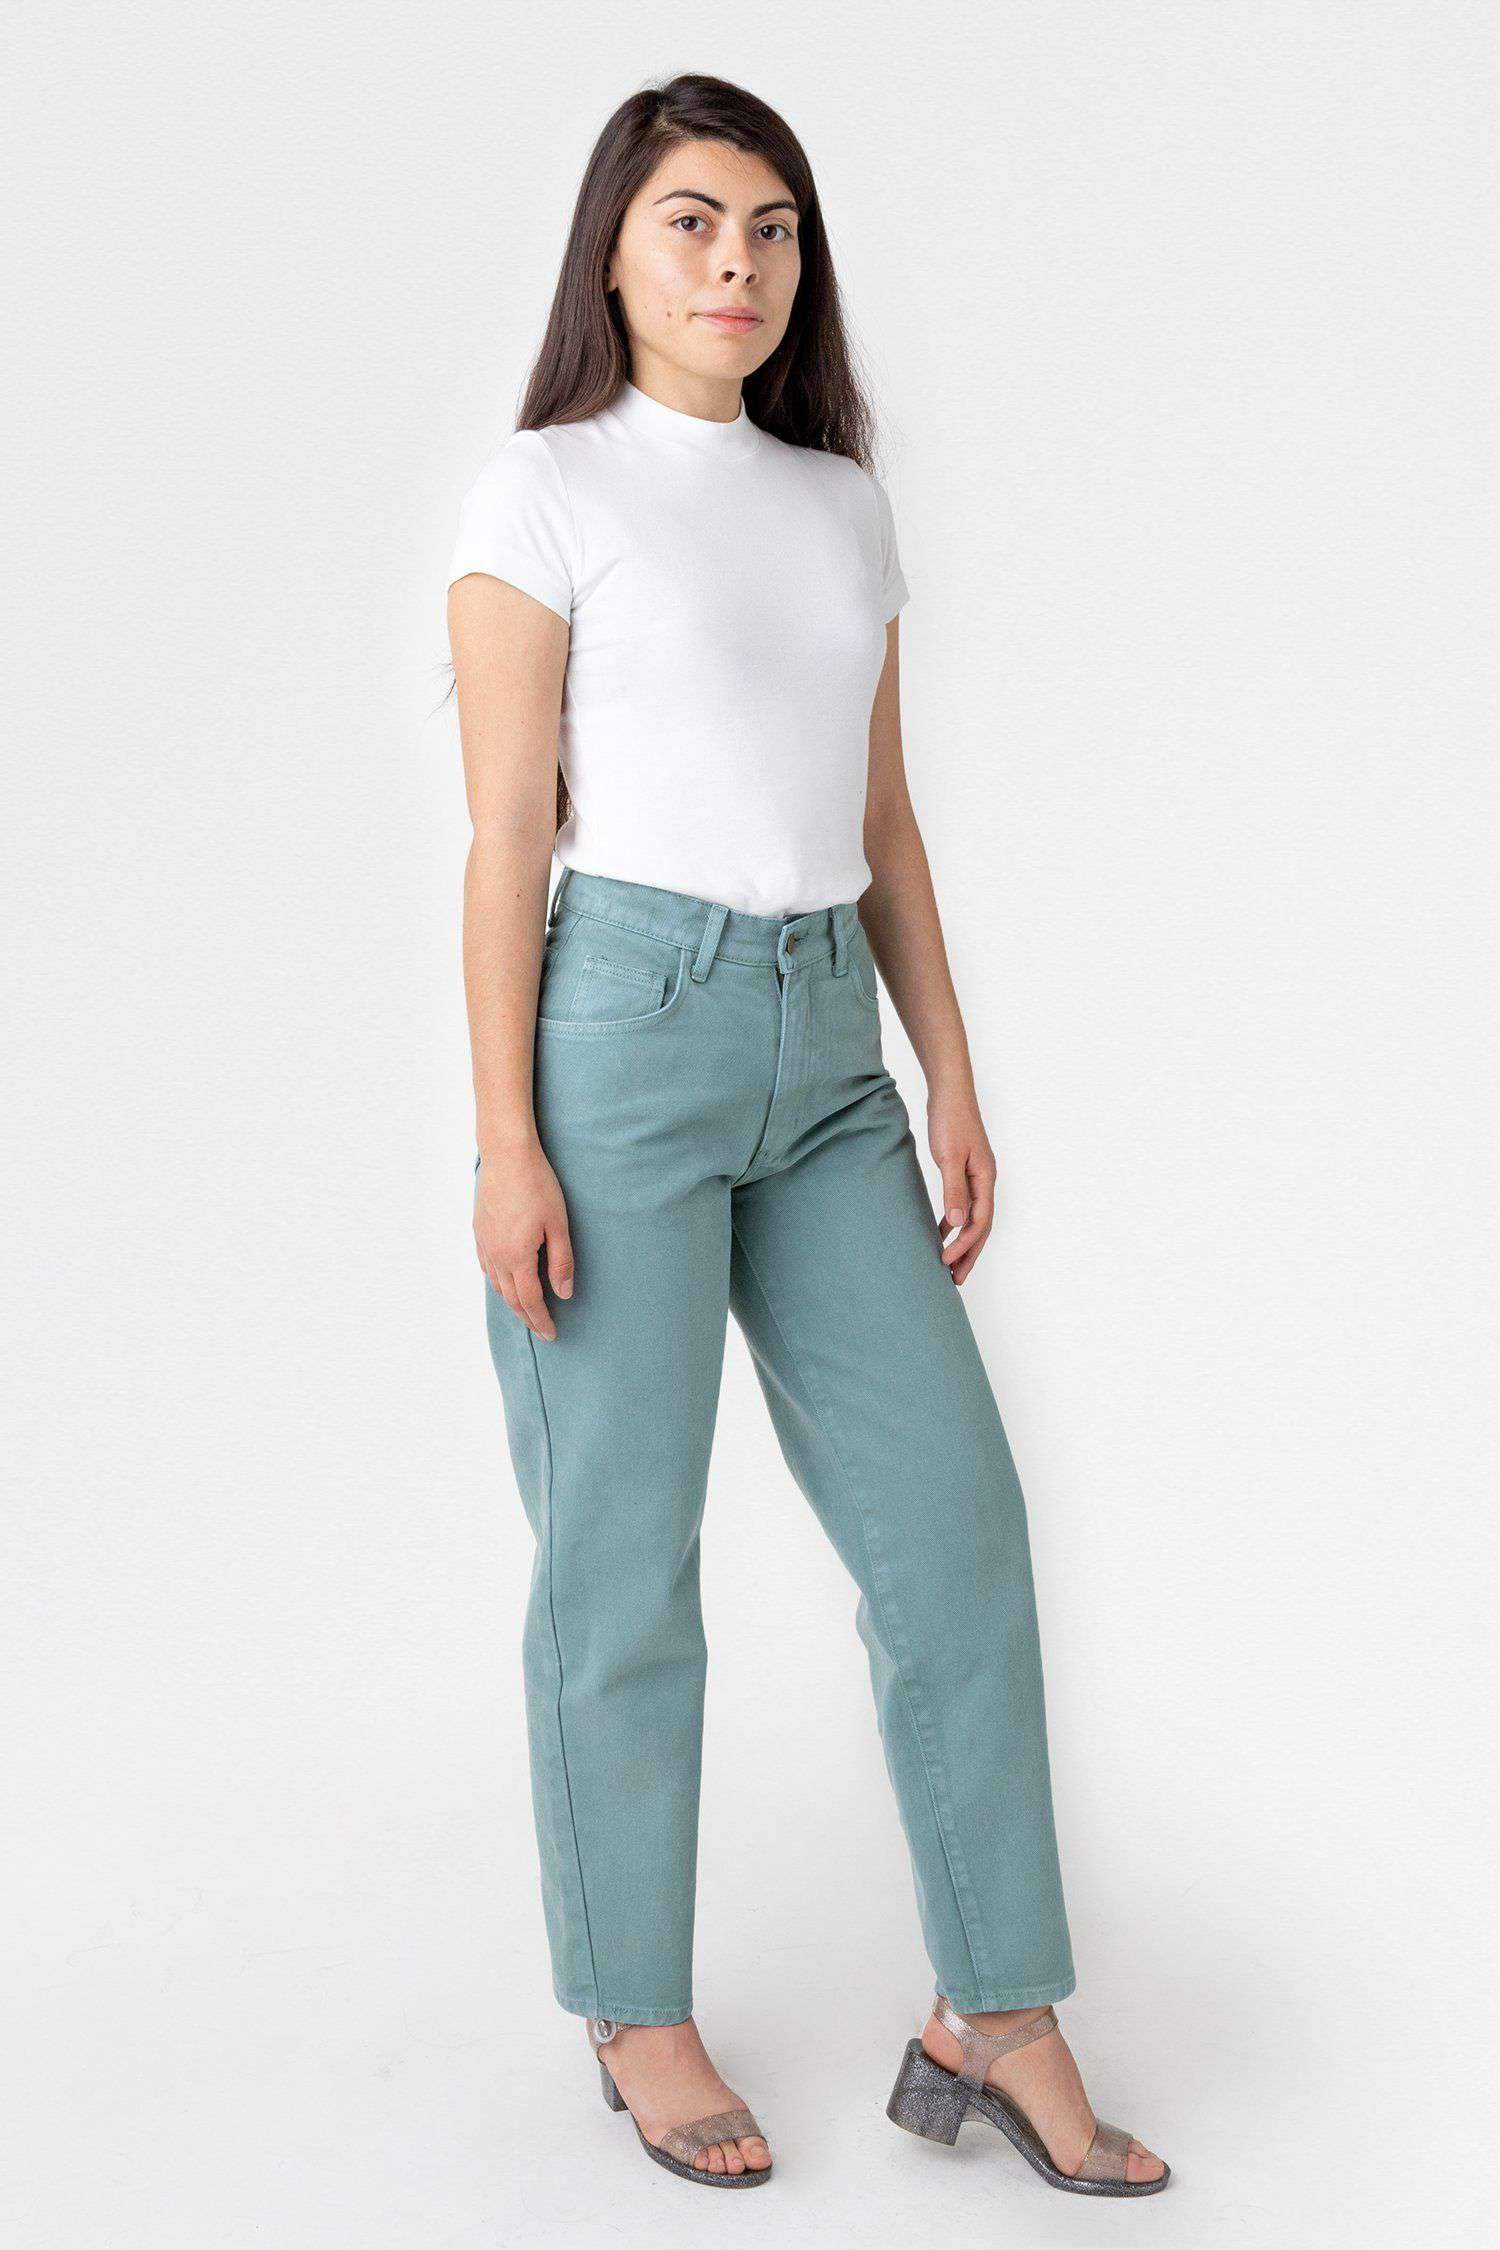 RBDW01GD - Garment Dye Women's Relaxed Fit Bull Denim Jean Jeans Los Angeles Apparel Atlantic Green 24/28 